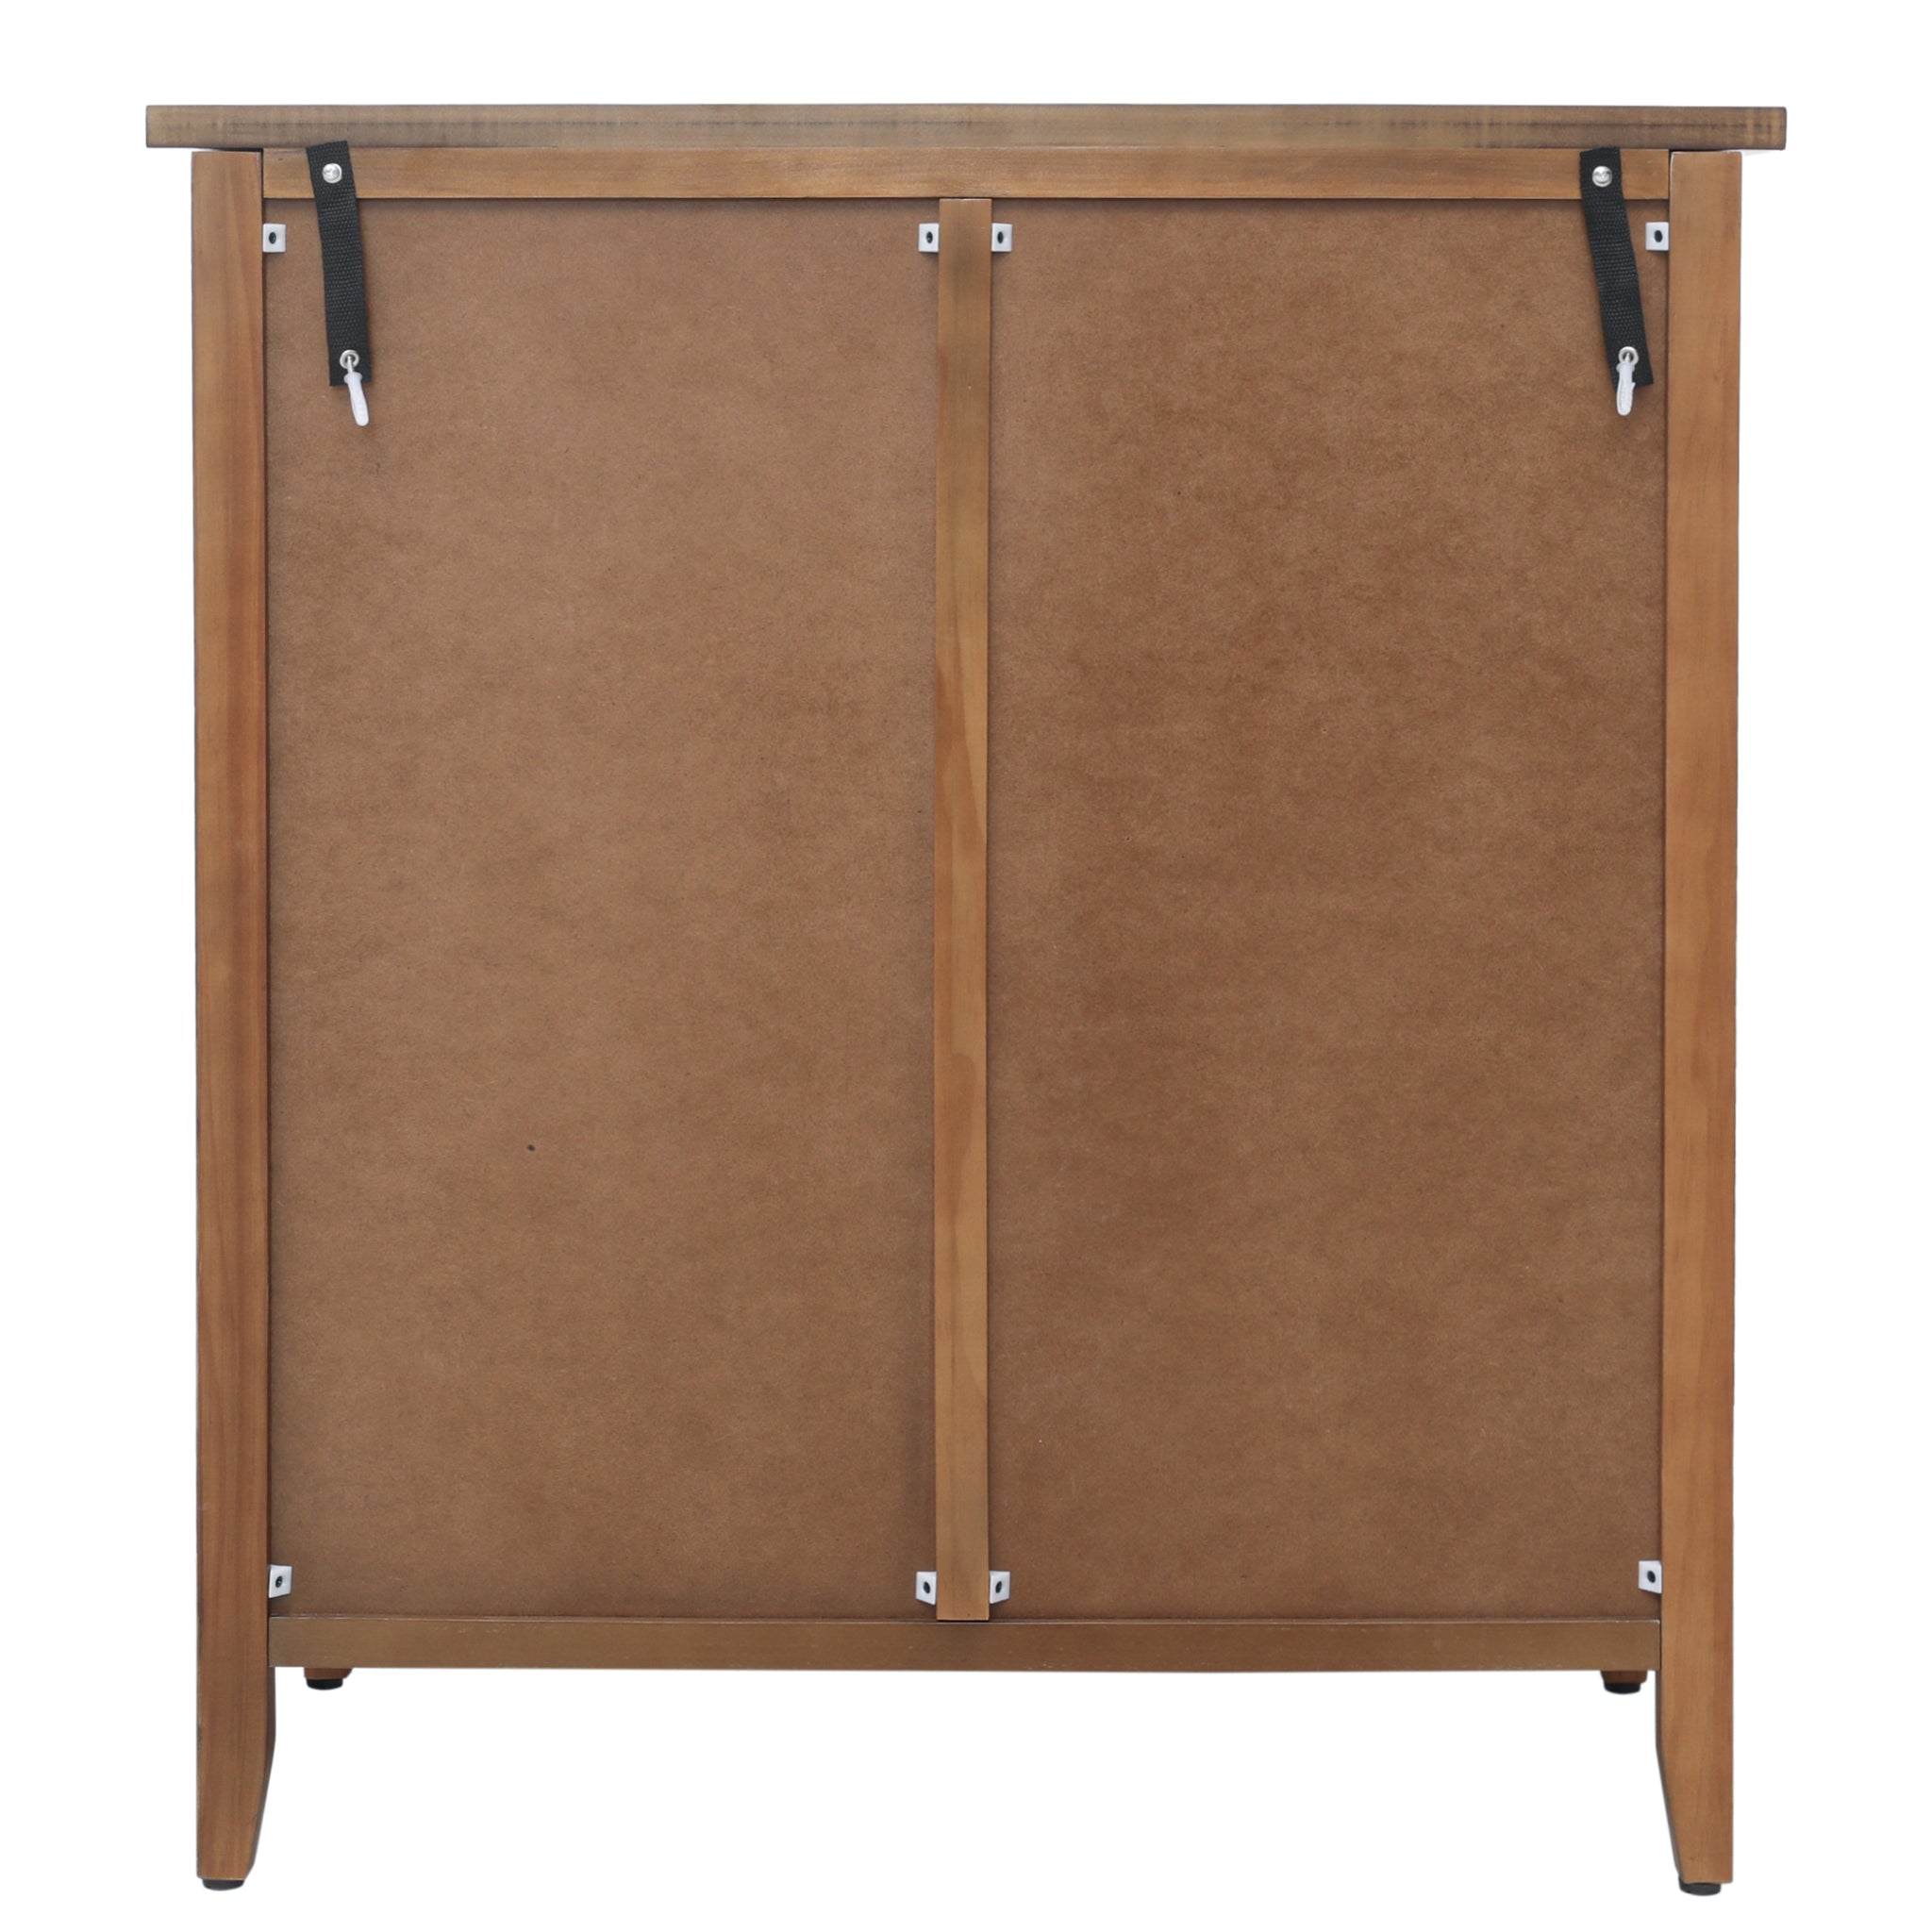 2 Door Cabinet, American Furniture, Suitable for